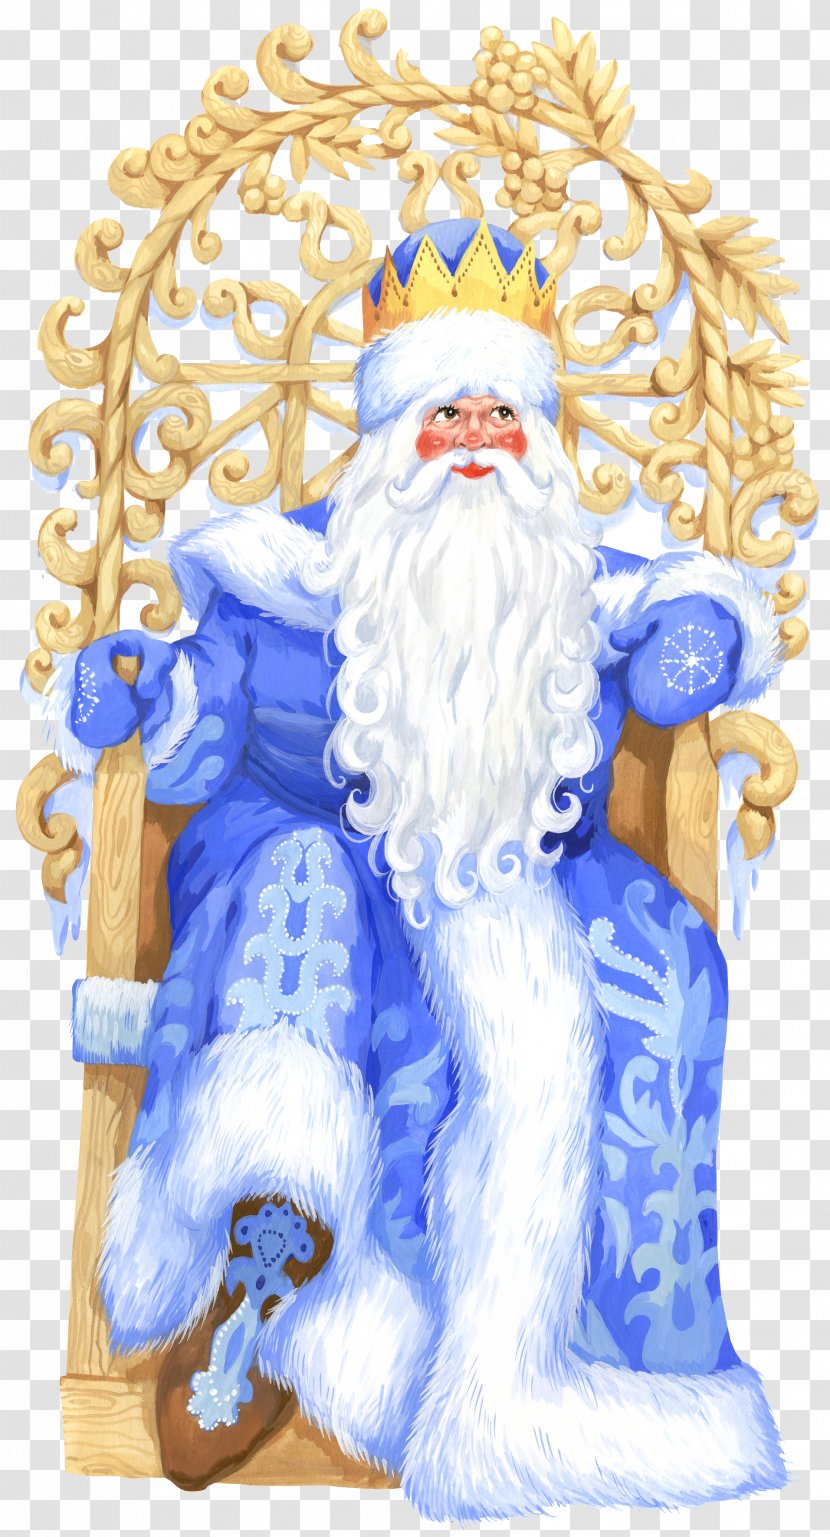 Santa Claus Ded Moroz Snegurochka Christmas Clip Art - Knecht Ruprecht - GRANDFATHER Transparent PNG